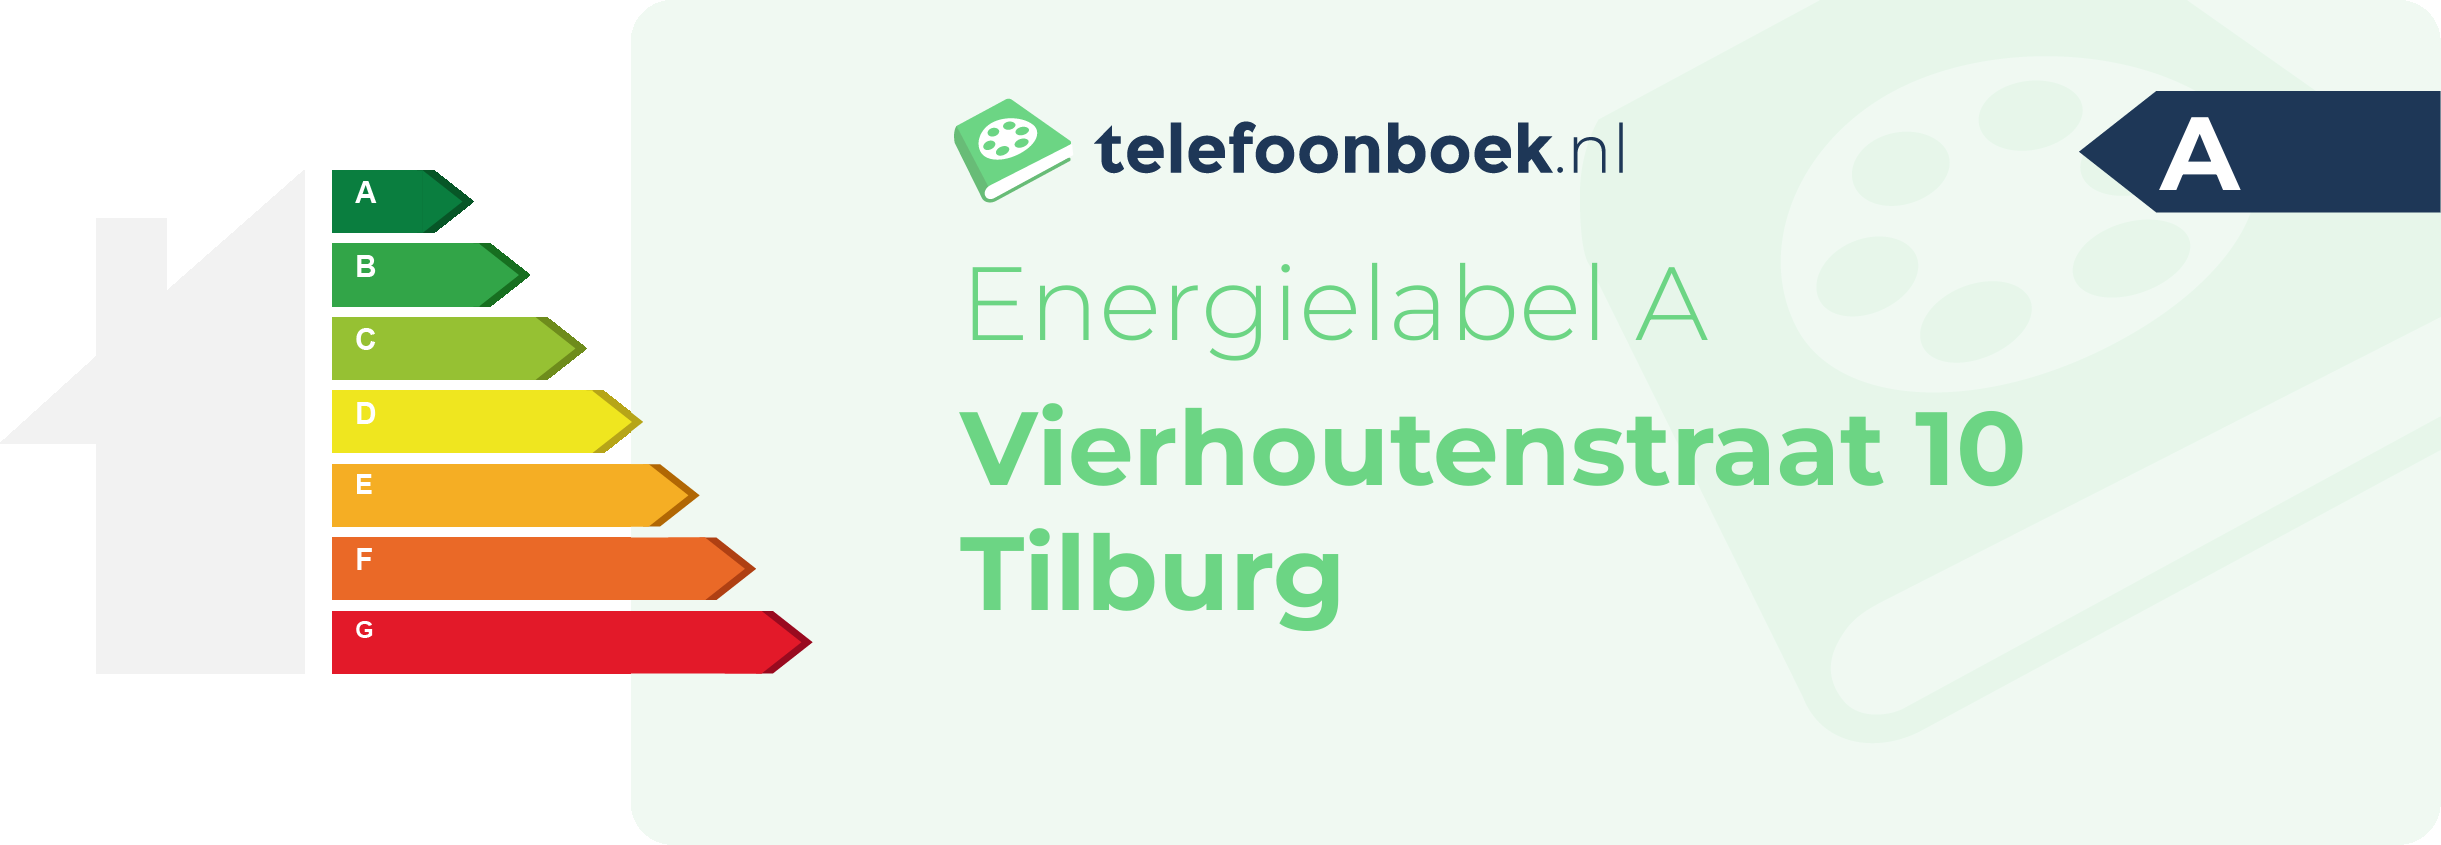 Energielabel Vierhoutenstraat 10 Tilburg